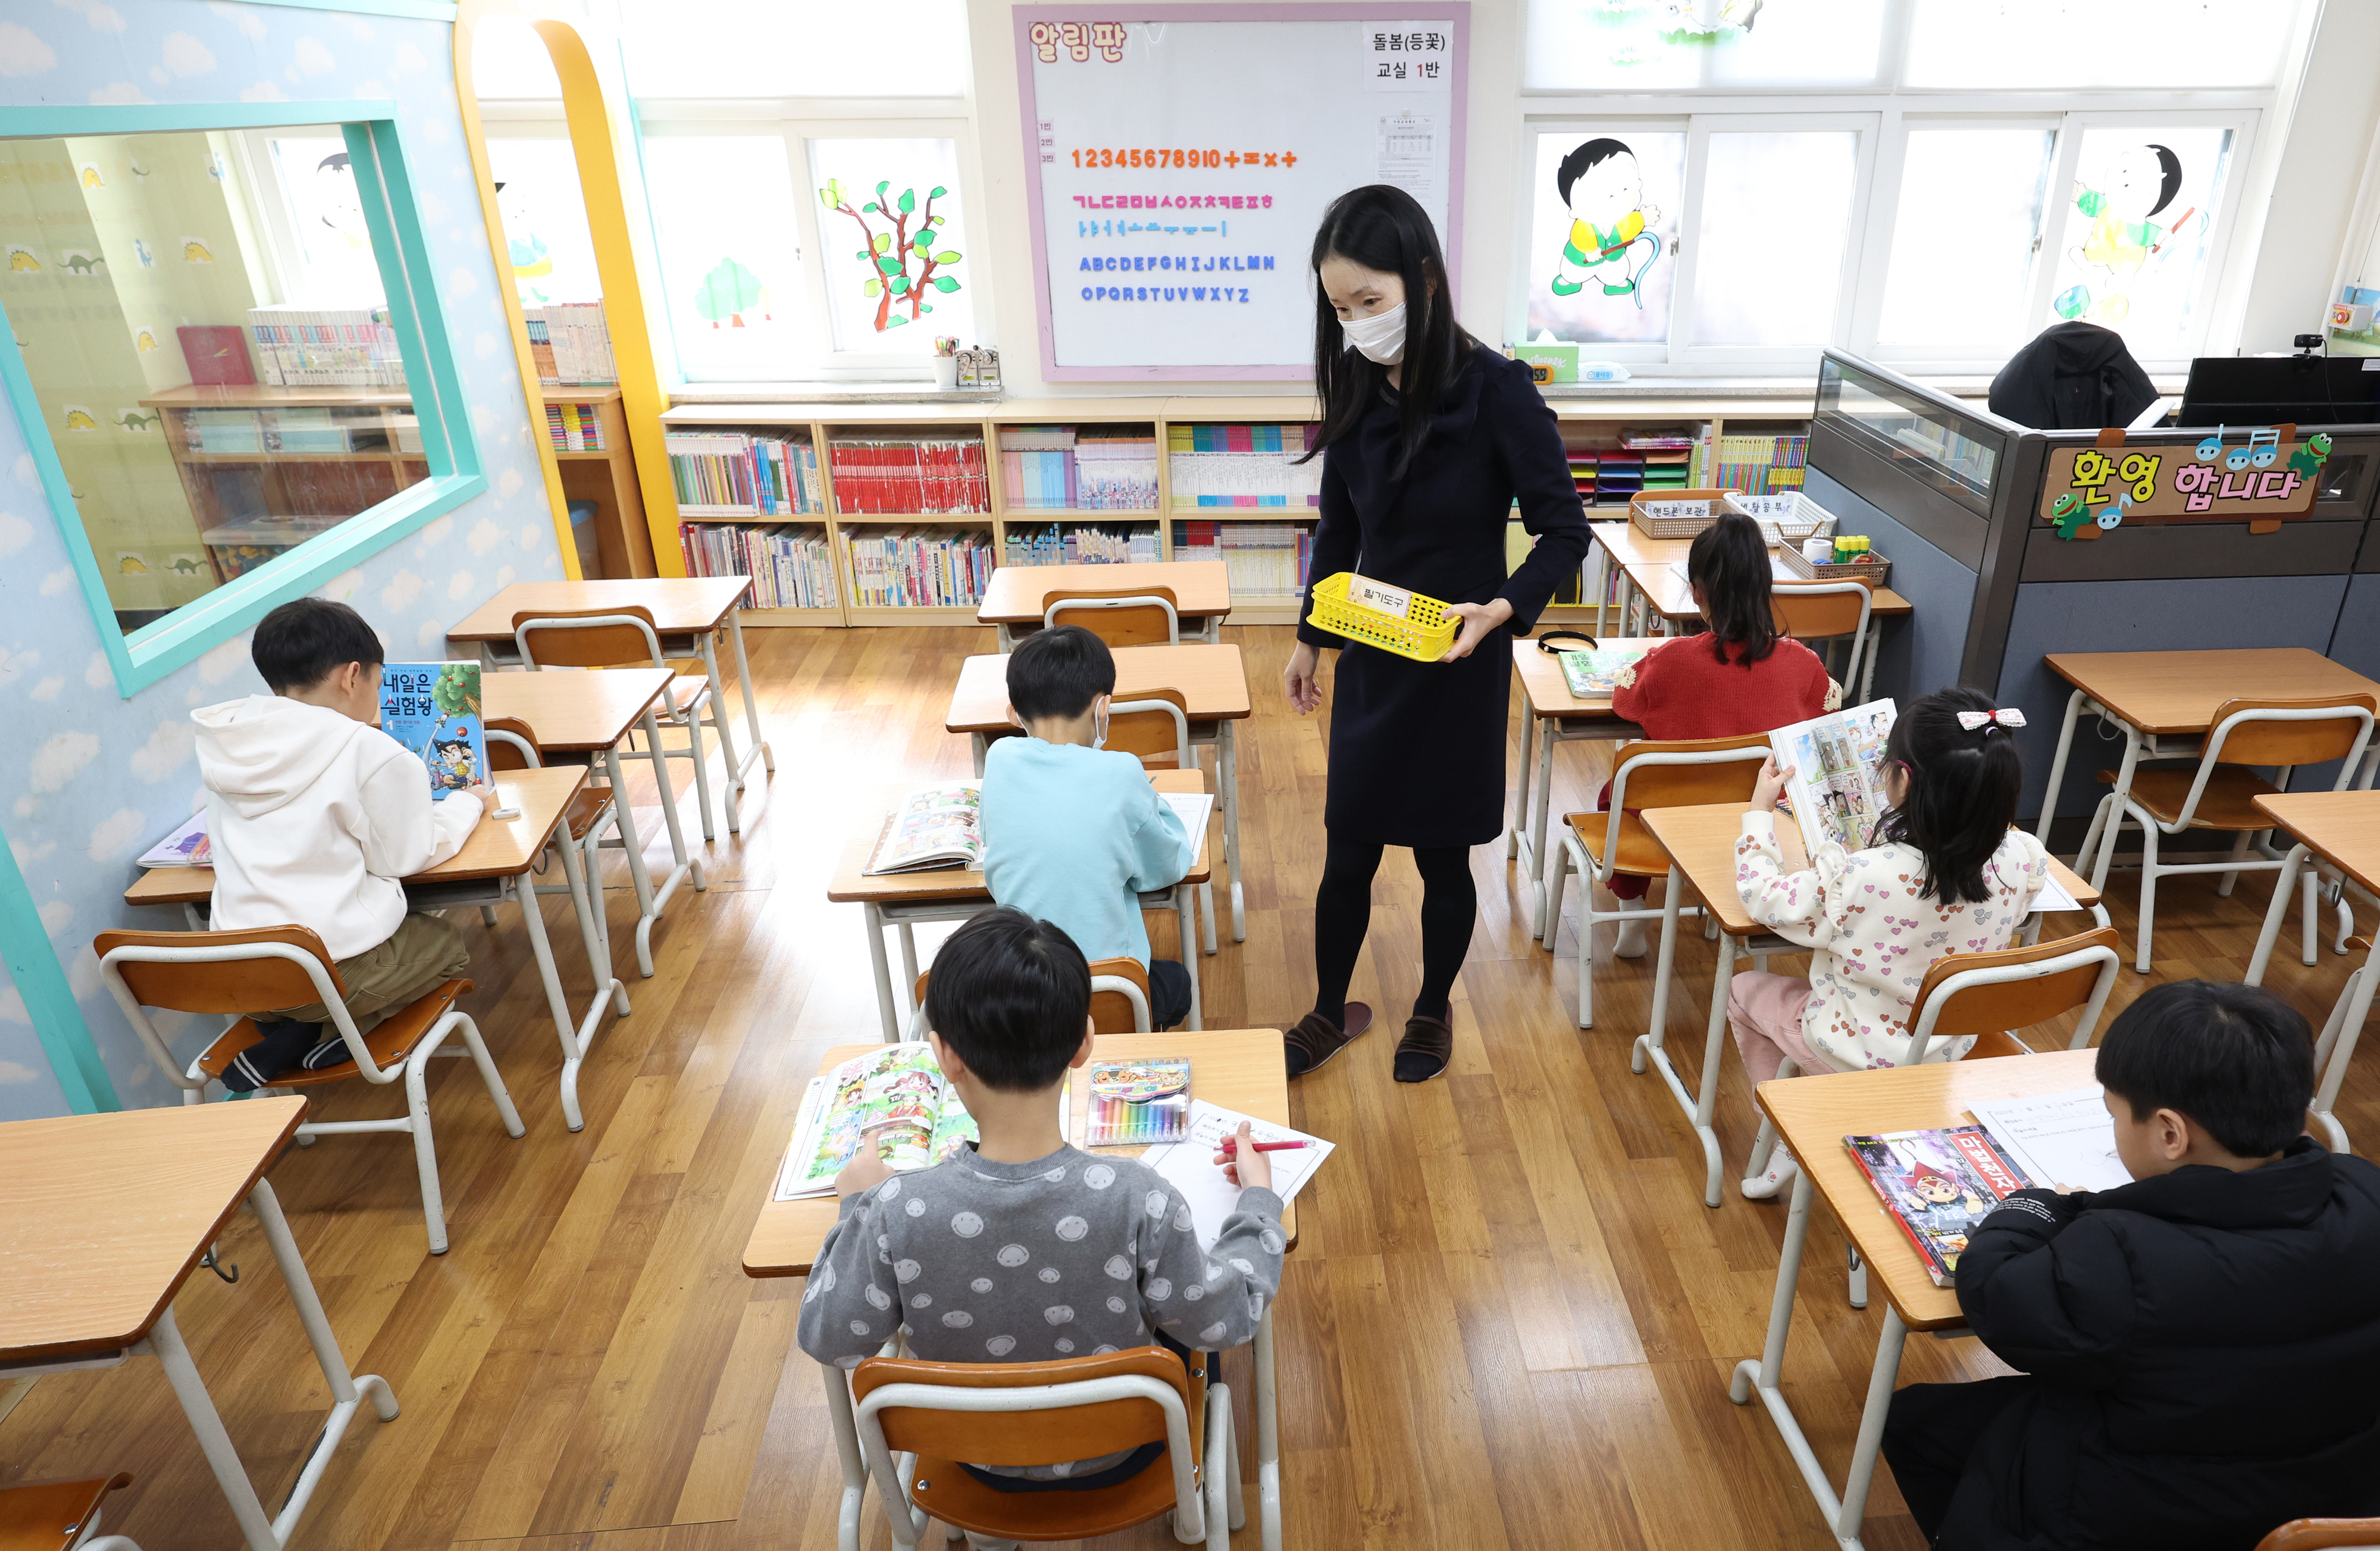 4일 오후 서울의 한 초등학교 돌봄교실에서 어린이들이 책을 읽는 수업을 듣고 있다. 연합뉴스